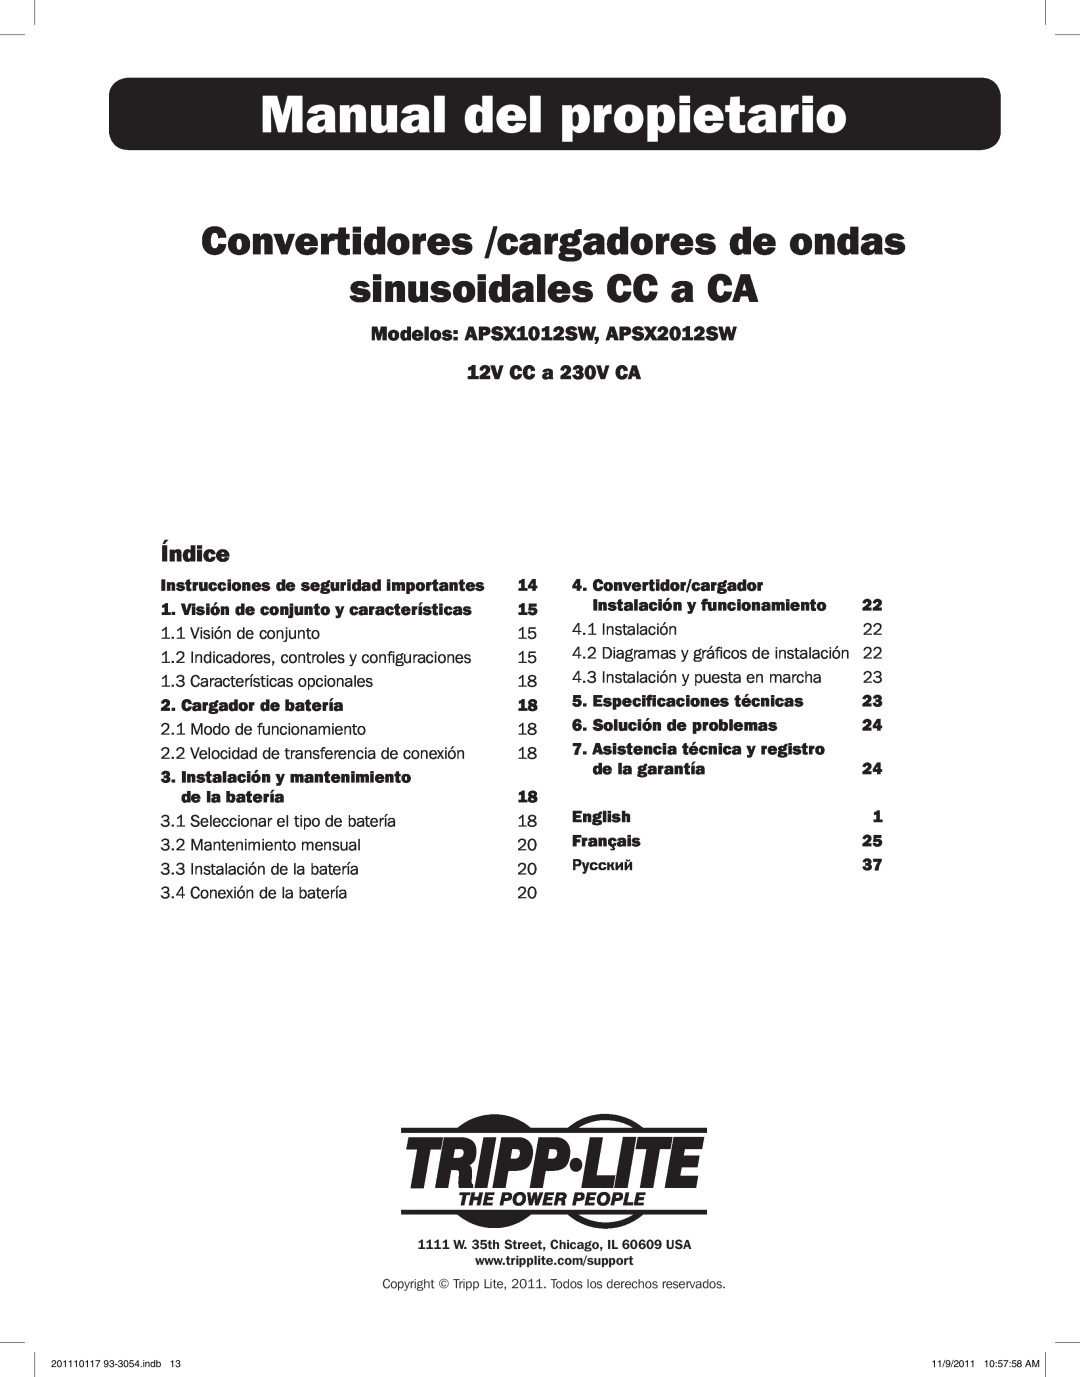 Tripp Lite APSX2012SW Manual del propietario, Convertidores /cargadores de ondas sinusoidales CC a CA, Índice, Instalación 